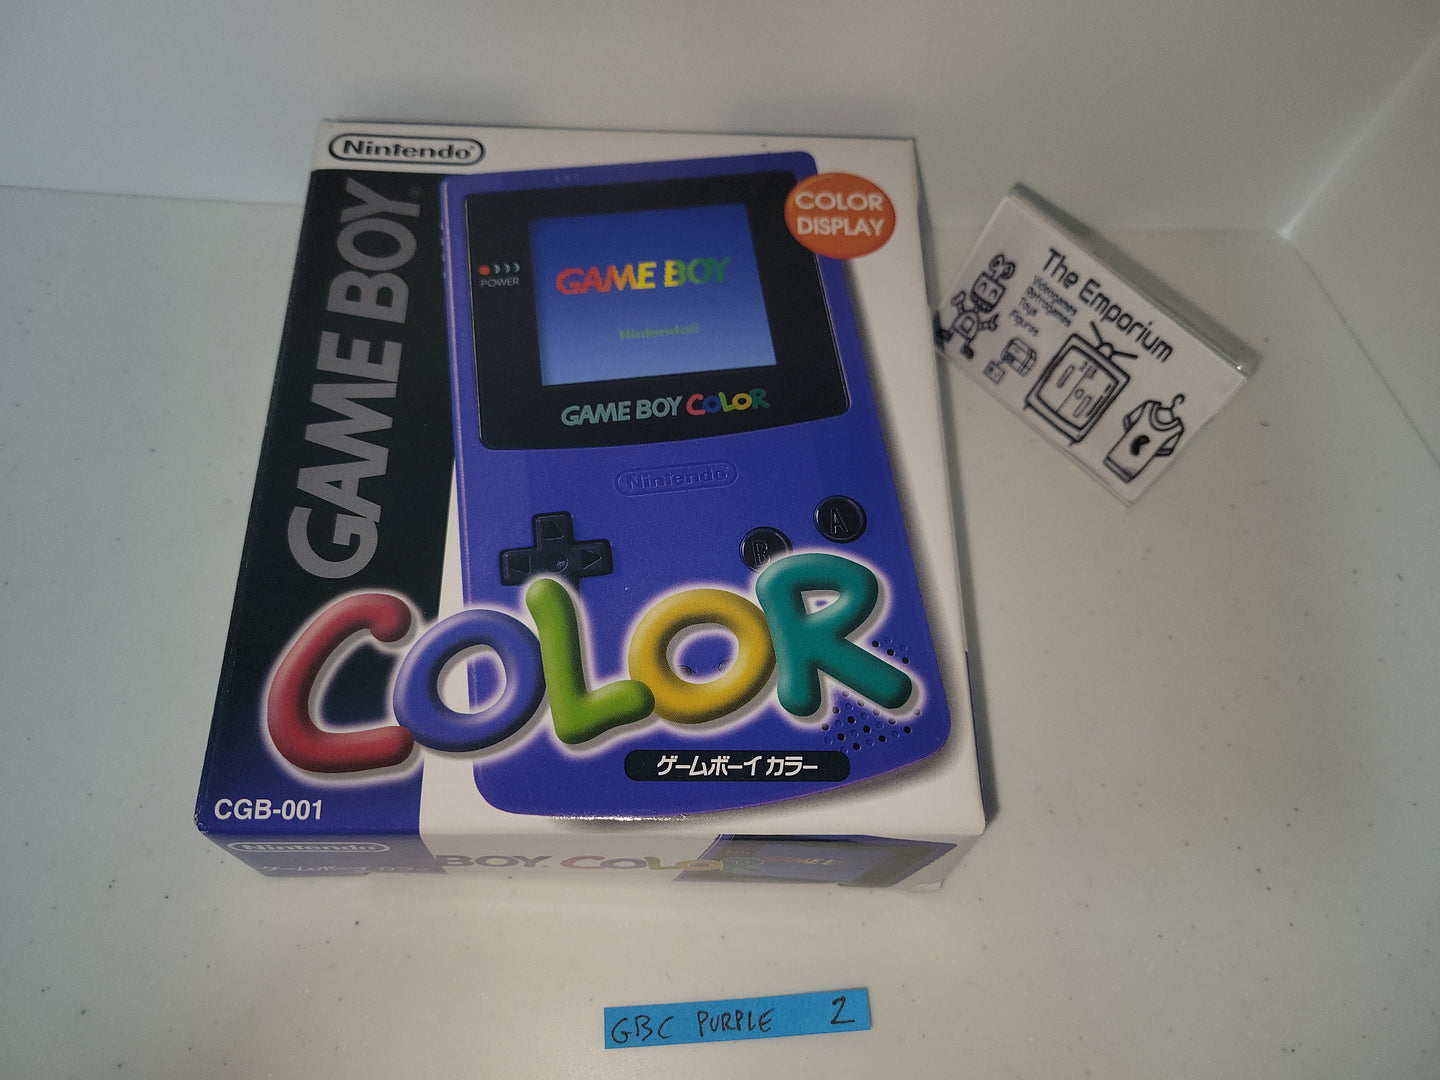 Game Boy Color (Purple) - Nintendo GB GameBoy